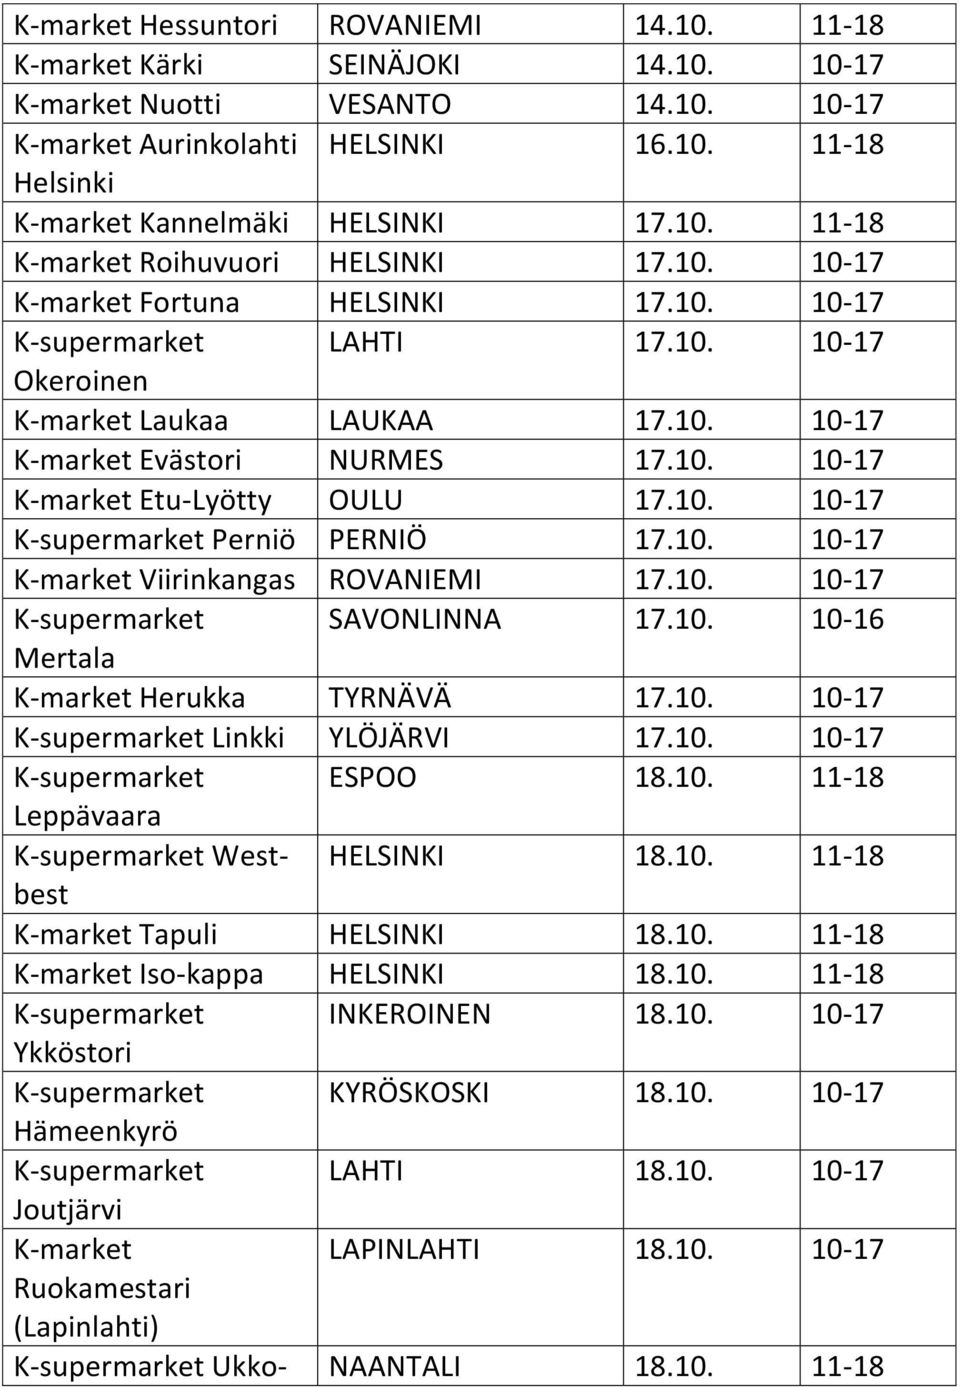 10. 10-17 K-market Etu-Lyötty OULU 17.10. 10-17 K-supermarket Perniö PERNIÖ 17.10. 10-17 K-market Viirinkangas ROVANIEMI 17.10. 10-17 K-supermarket SAVONLINNA 17.10. 10-16 Mertala K-market Herukka TYRNÄVÄ 17.